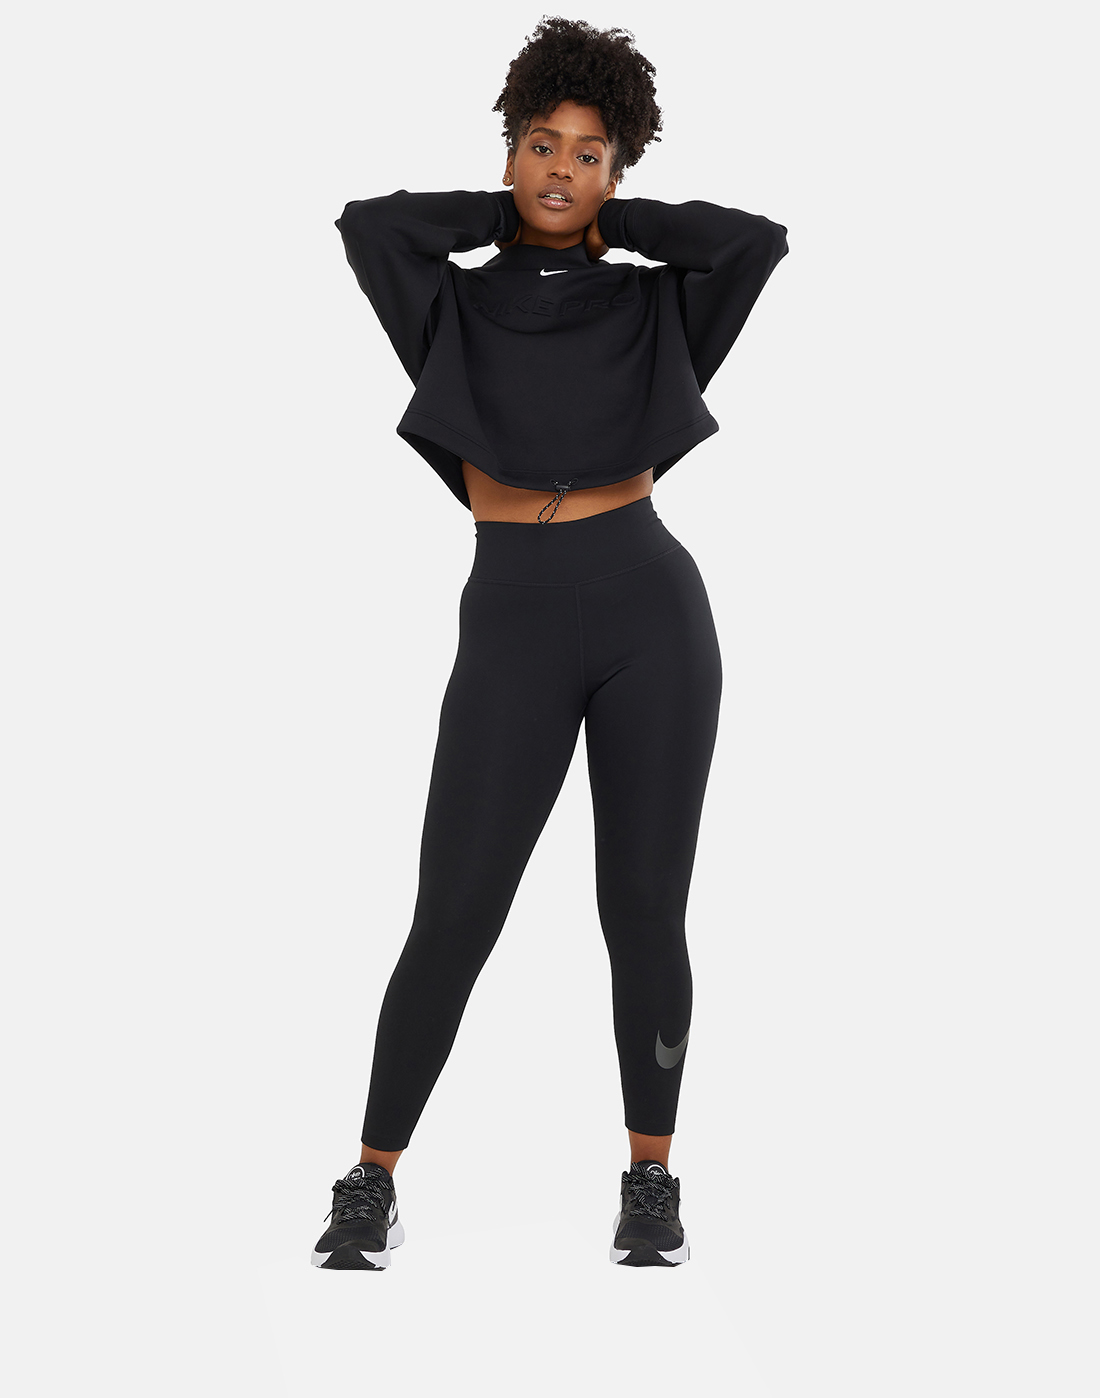 Nike Womens One Icon Clash 7/8 Leggings - Black